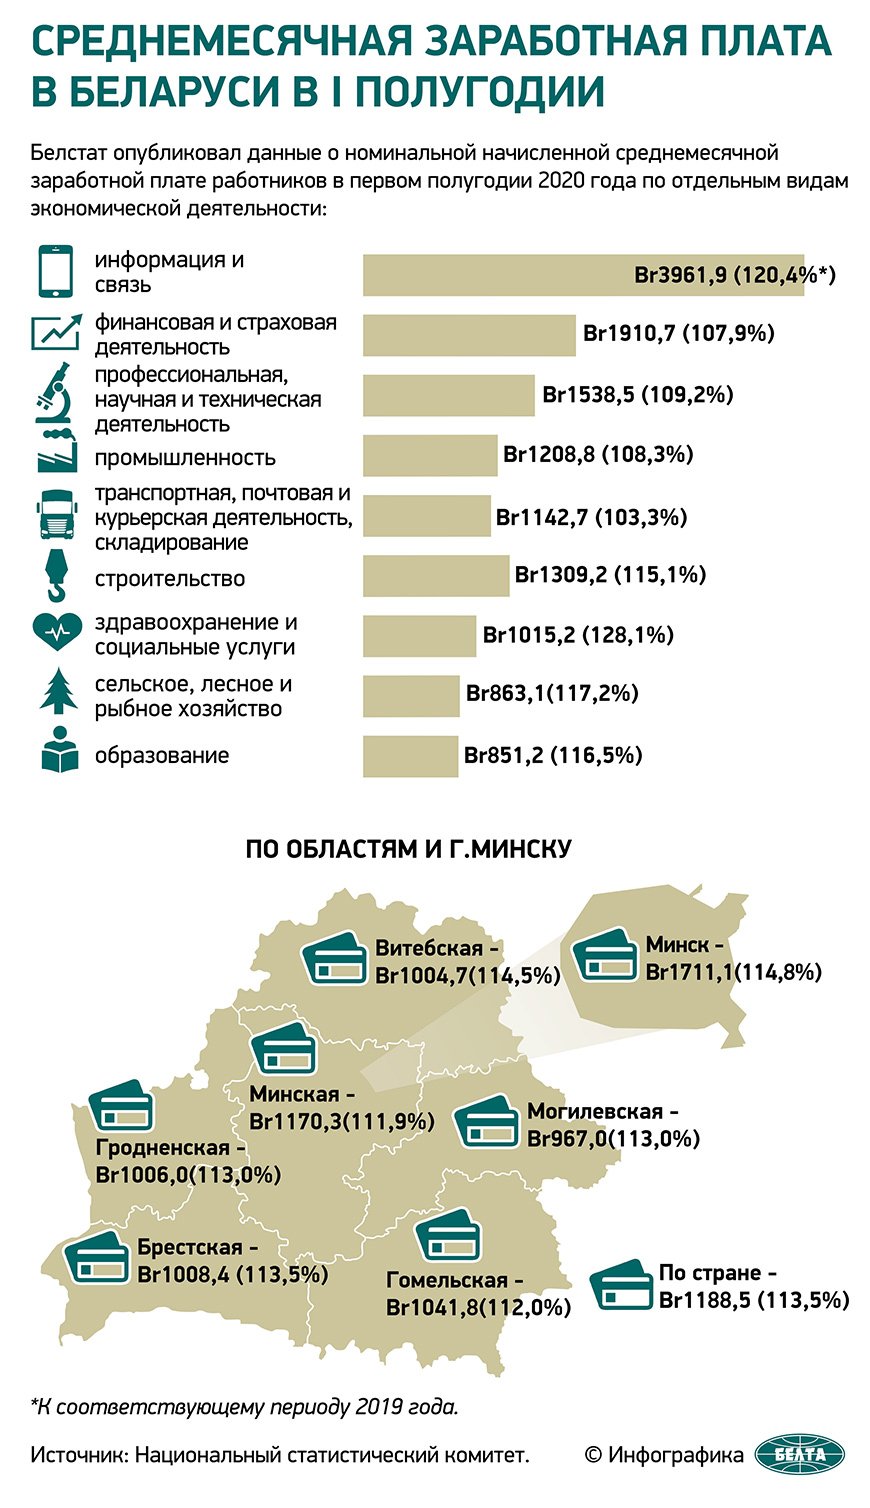 Среднемесячная заработная плата в Беларуси в I полугодии